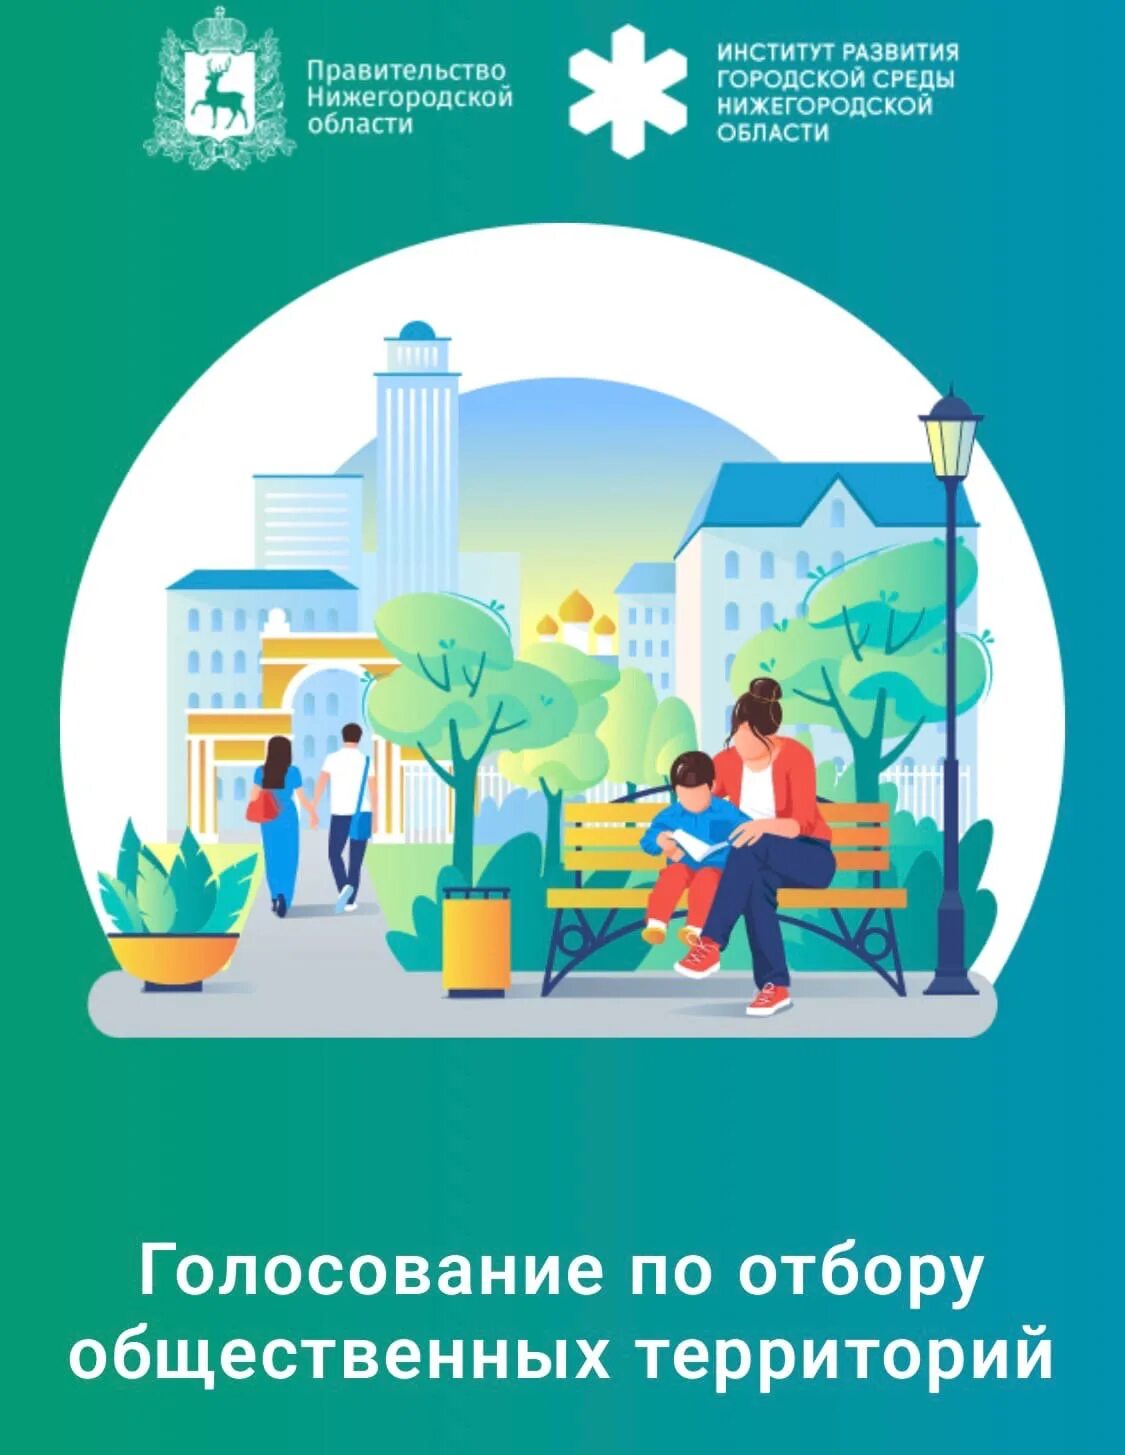 Программа городская среда нижегородская область